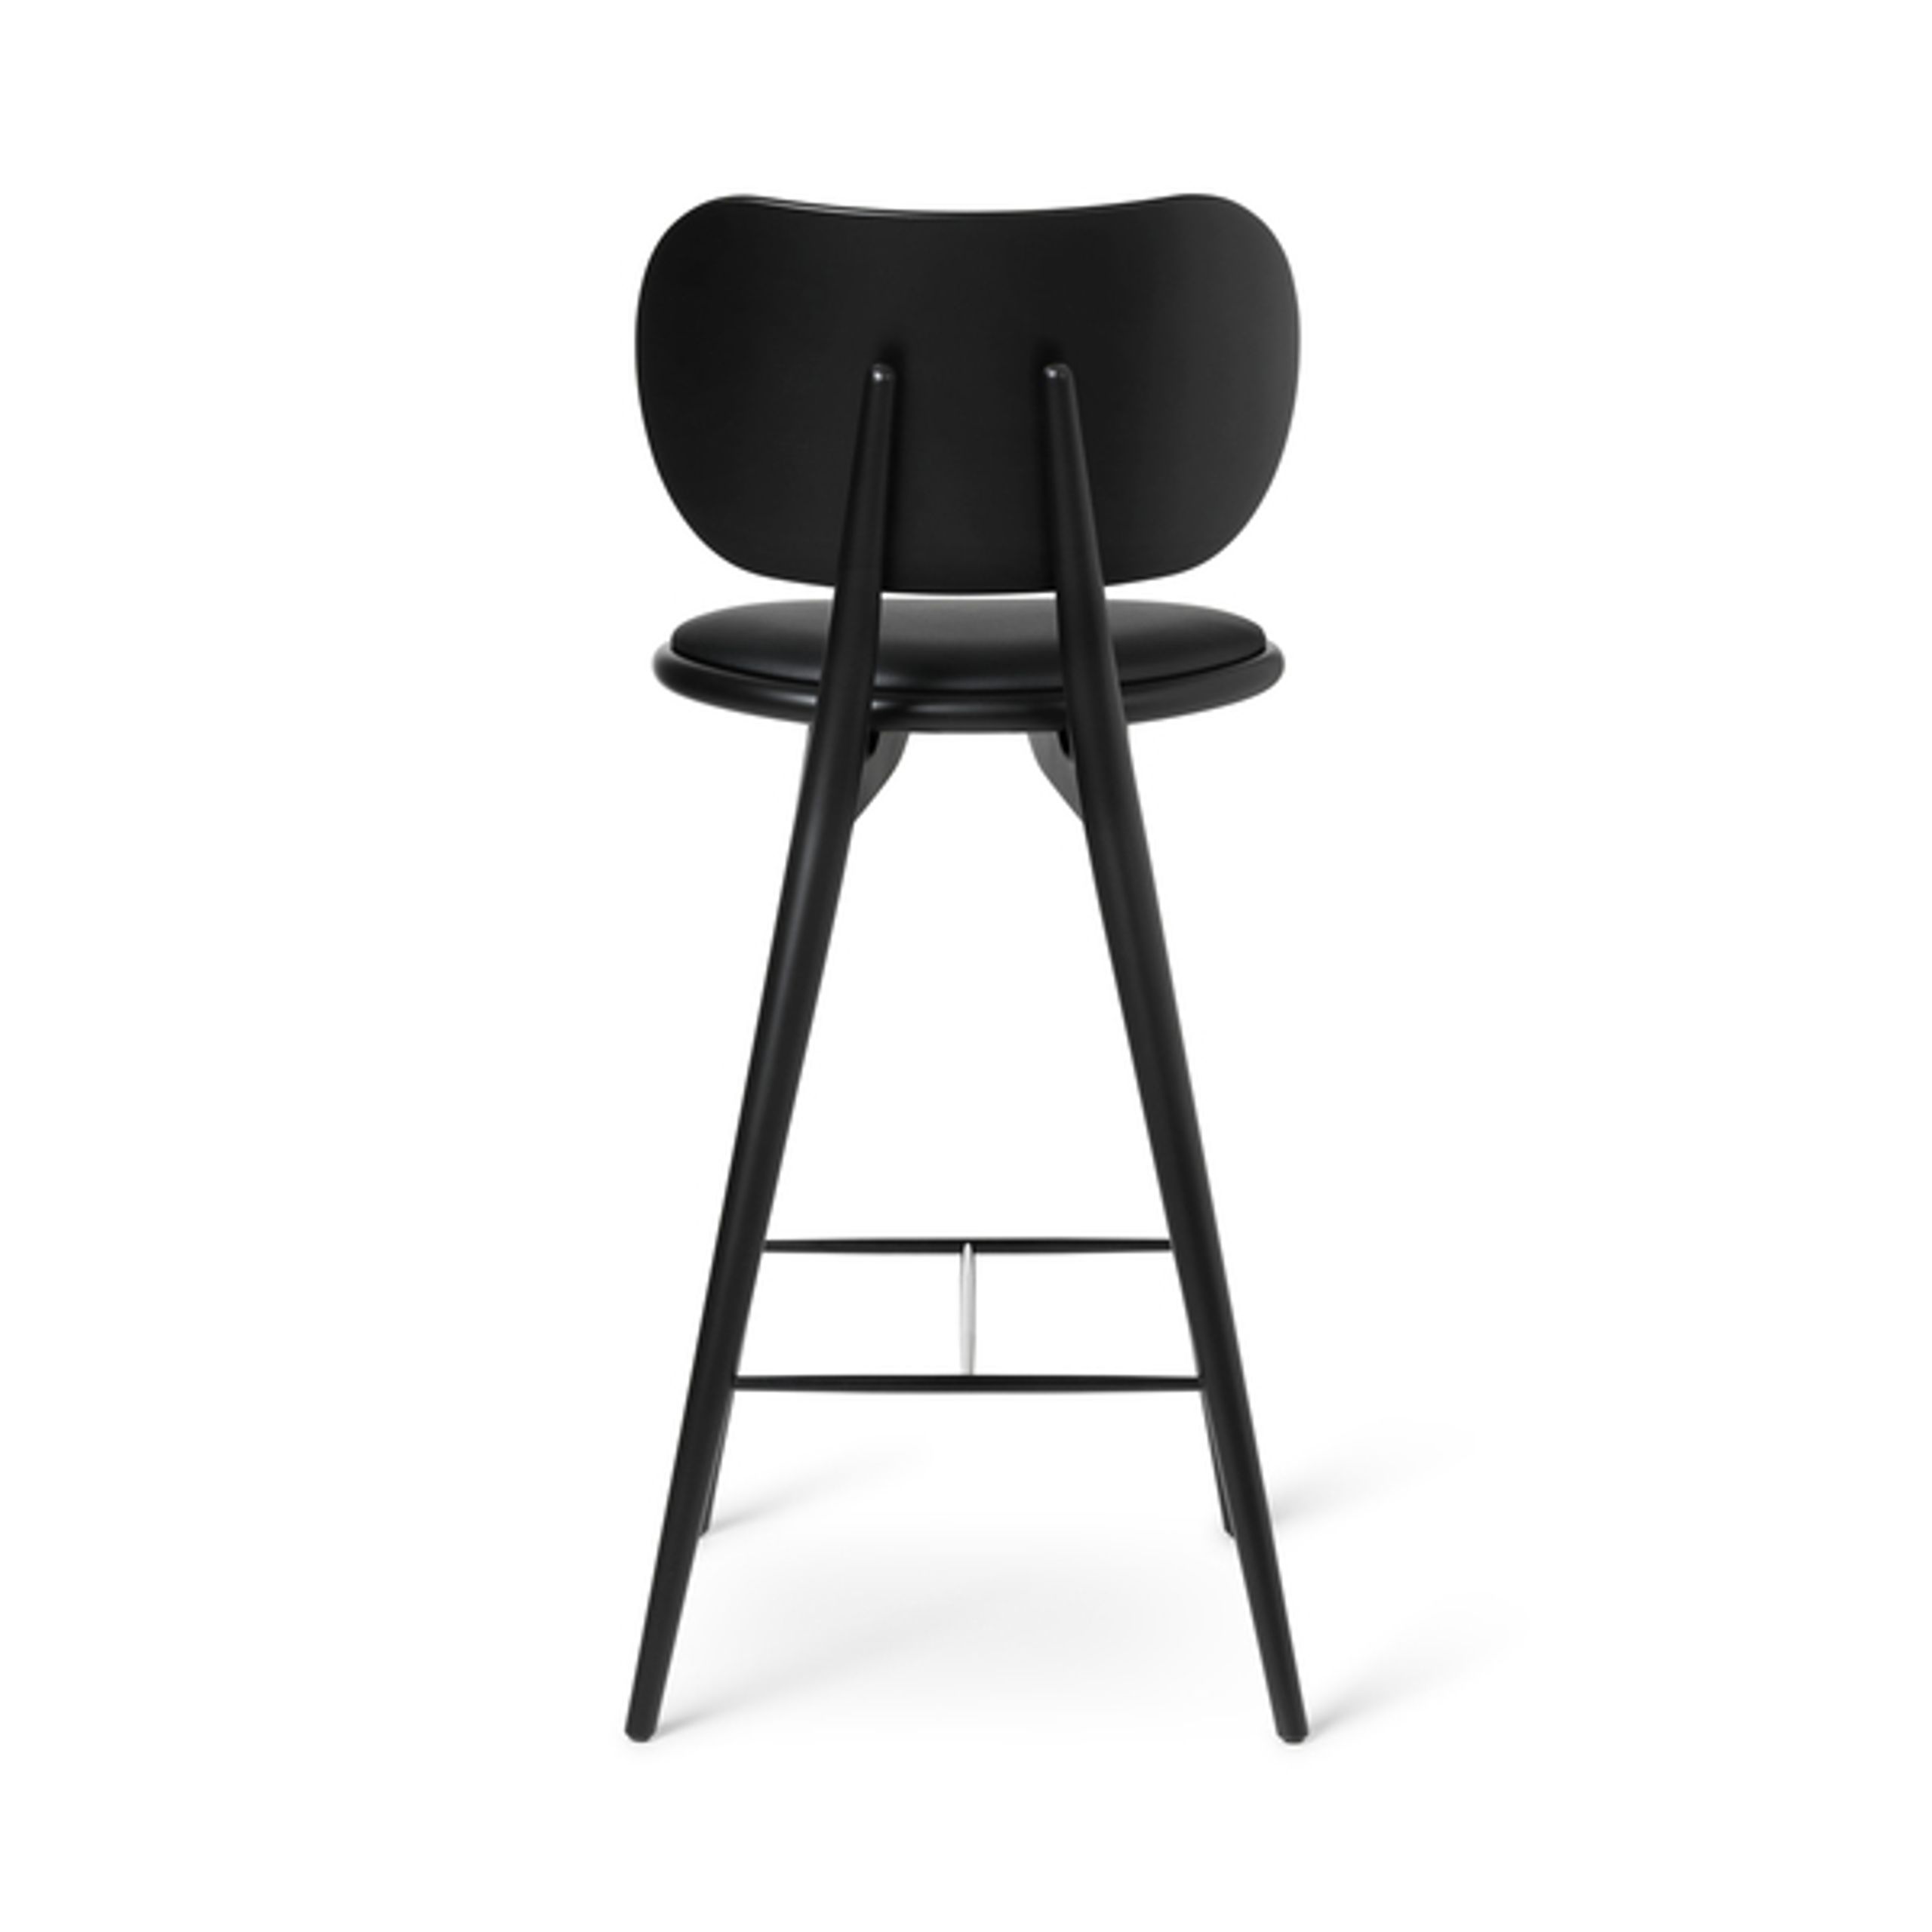 Mater - Chair - High Stool 74 - Sort Lakeret Bøg With Backrest